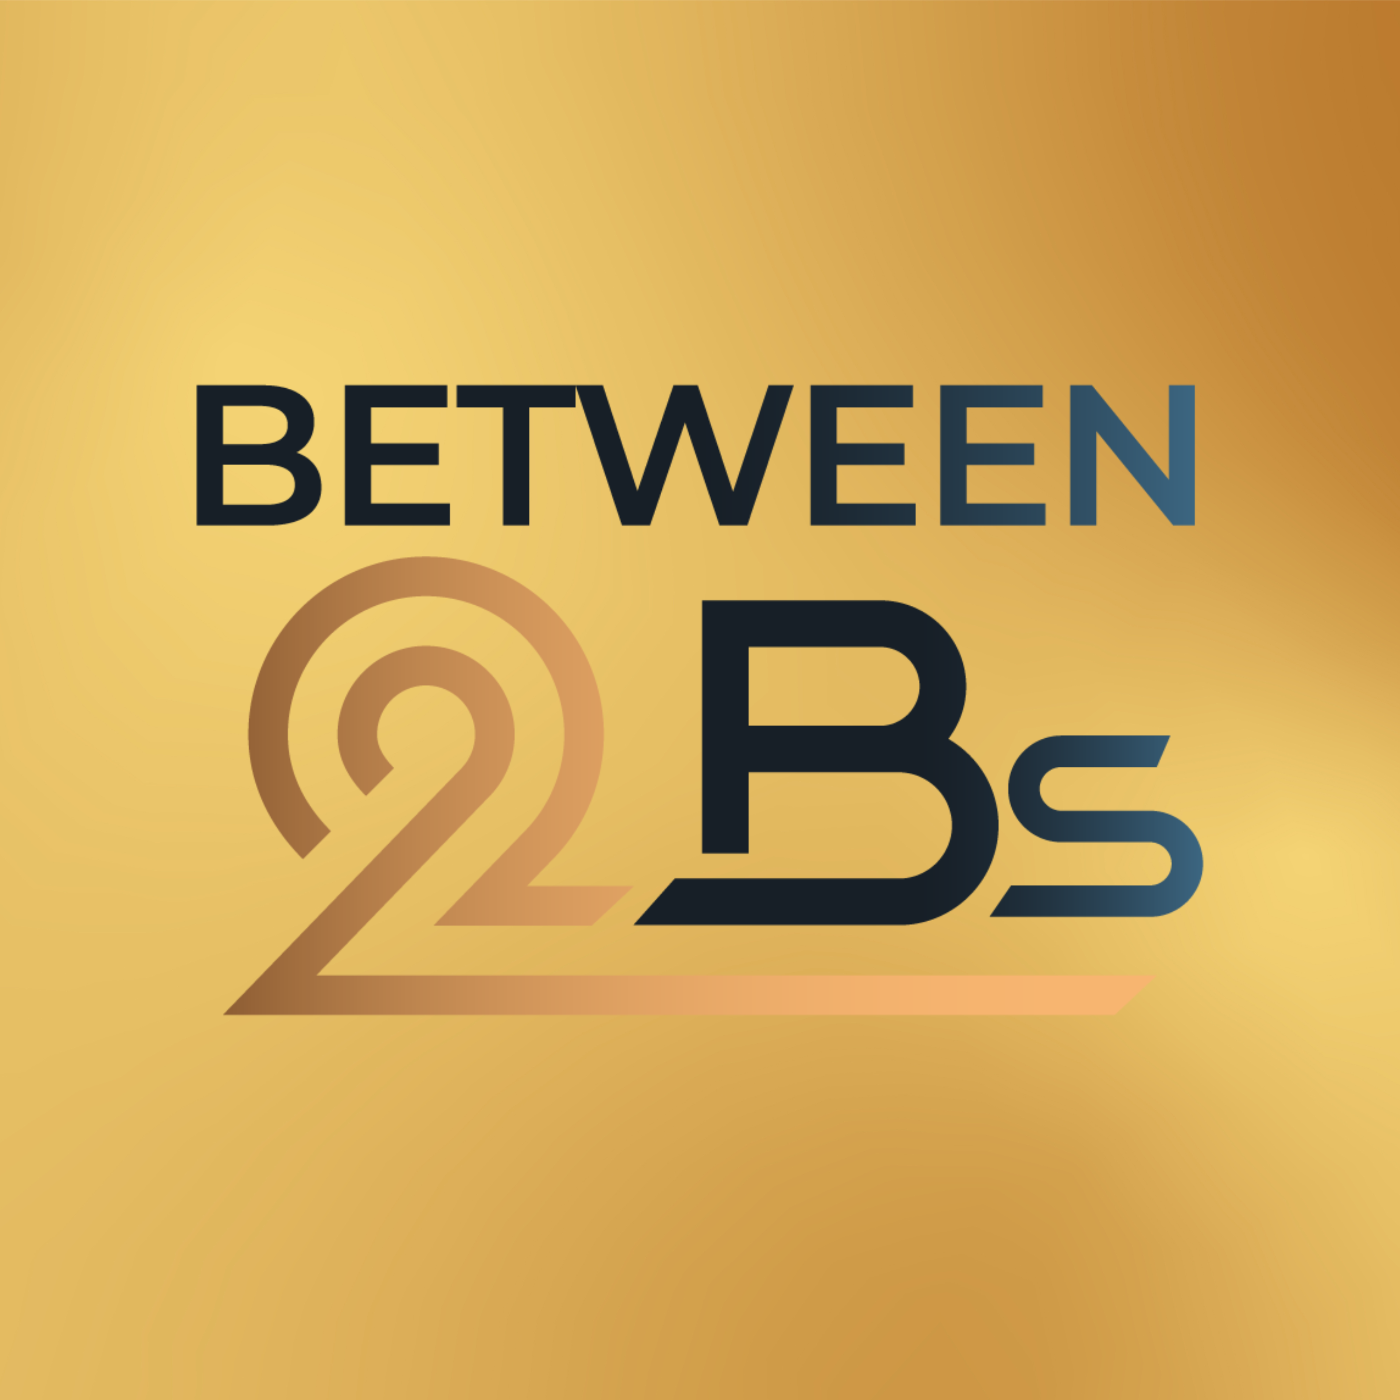 Between2Bs